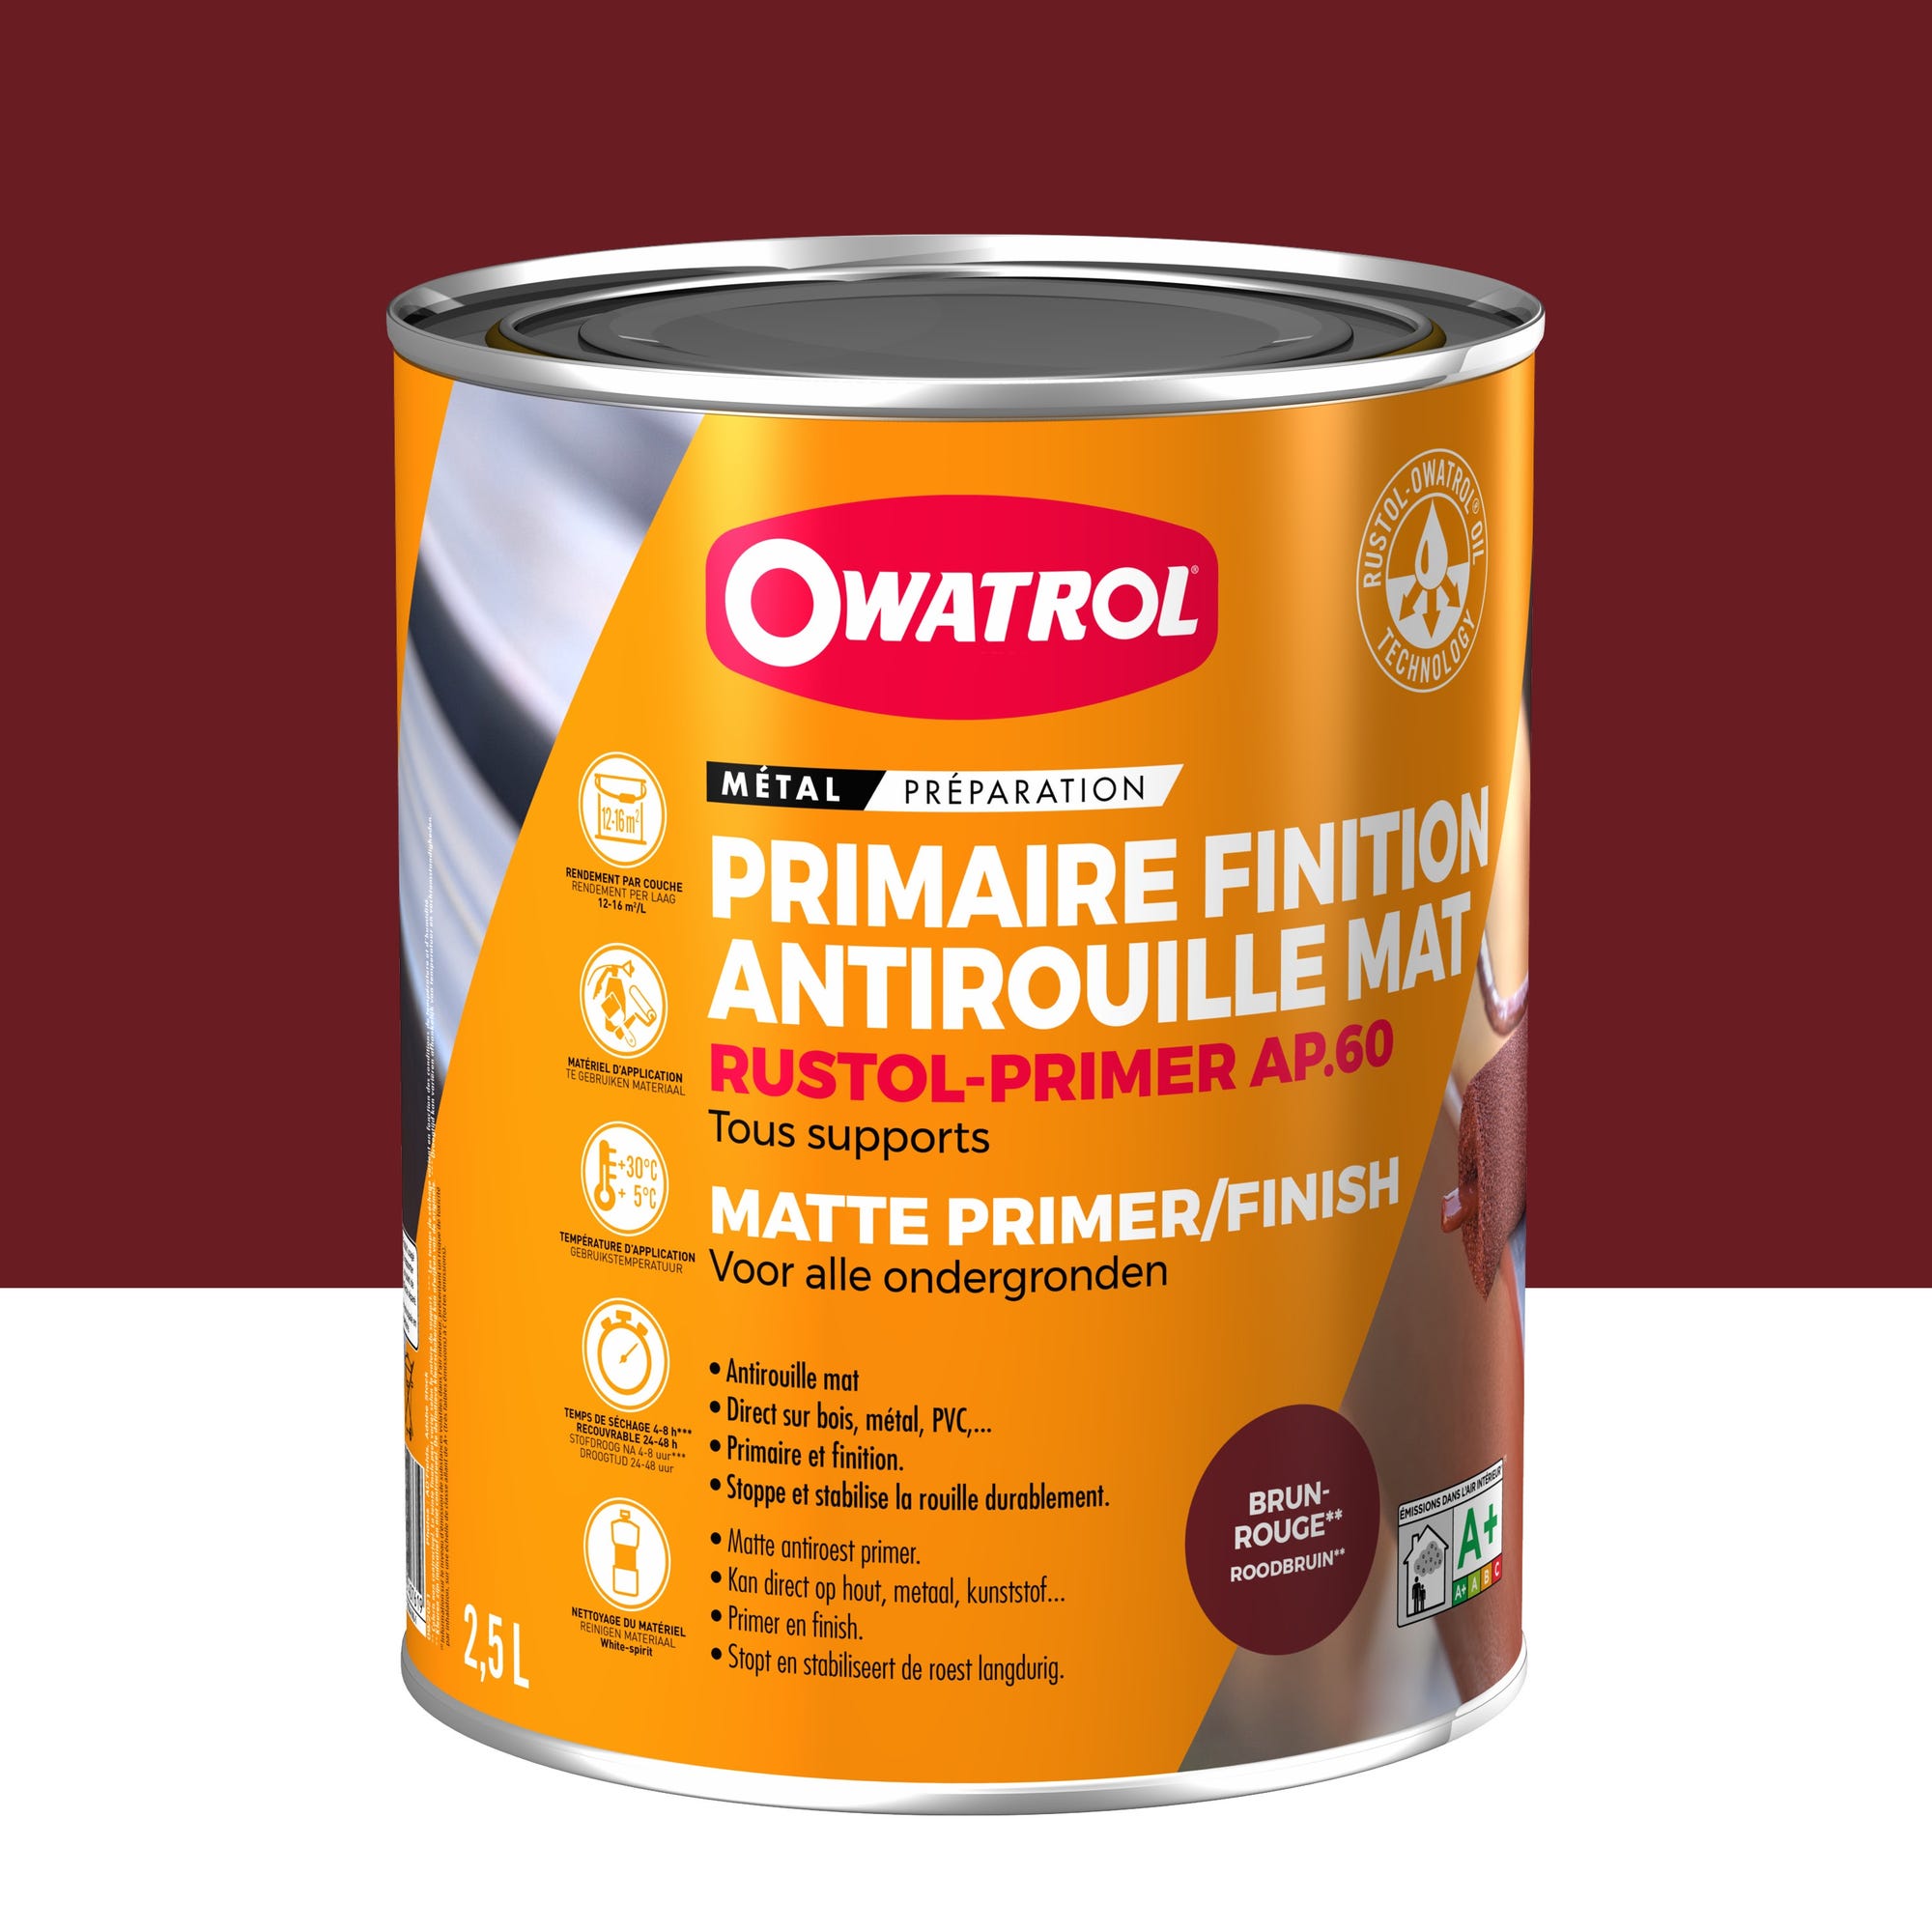 Primaire et finition mat antirouille Owatrol RUSTOL PRIMER AP 60 Brun-Rouge (ow8) 2.5 litres 0